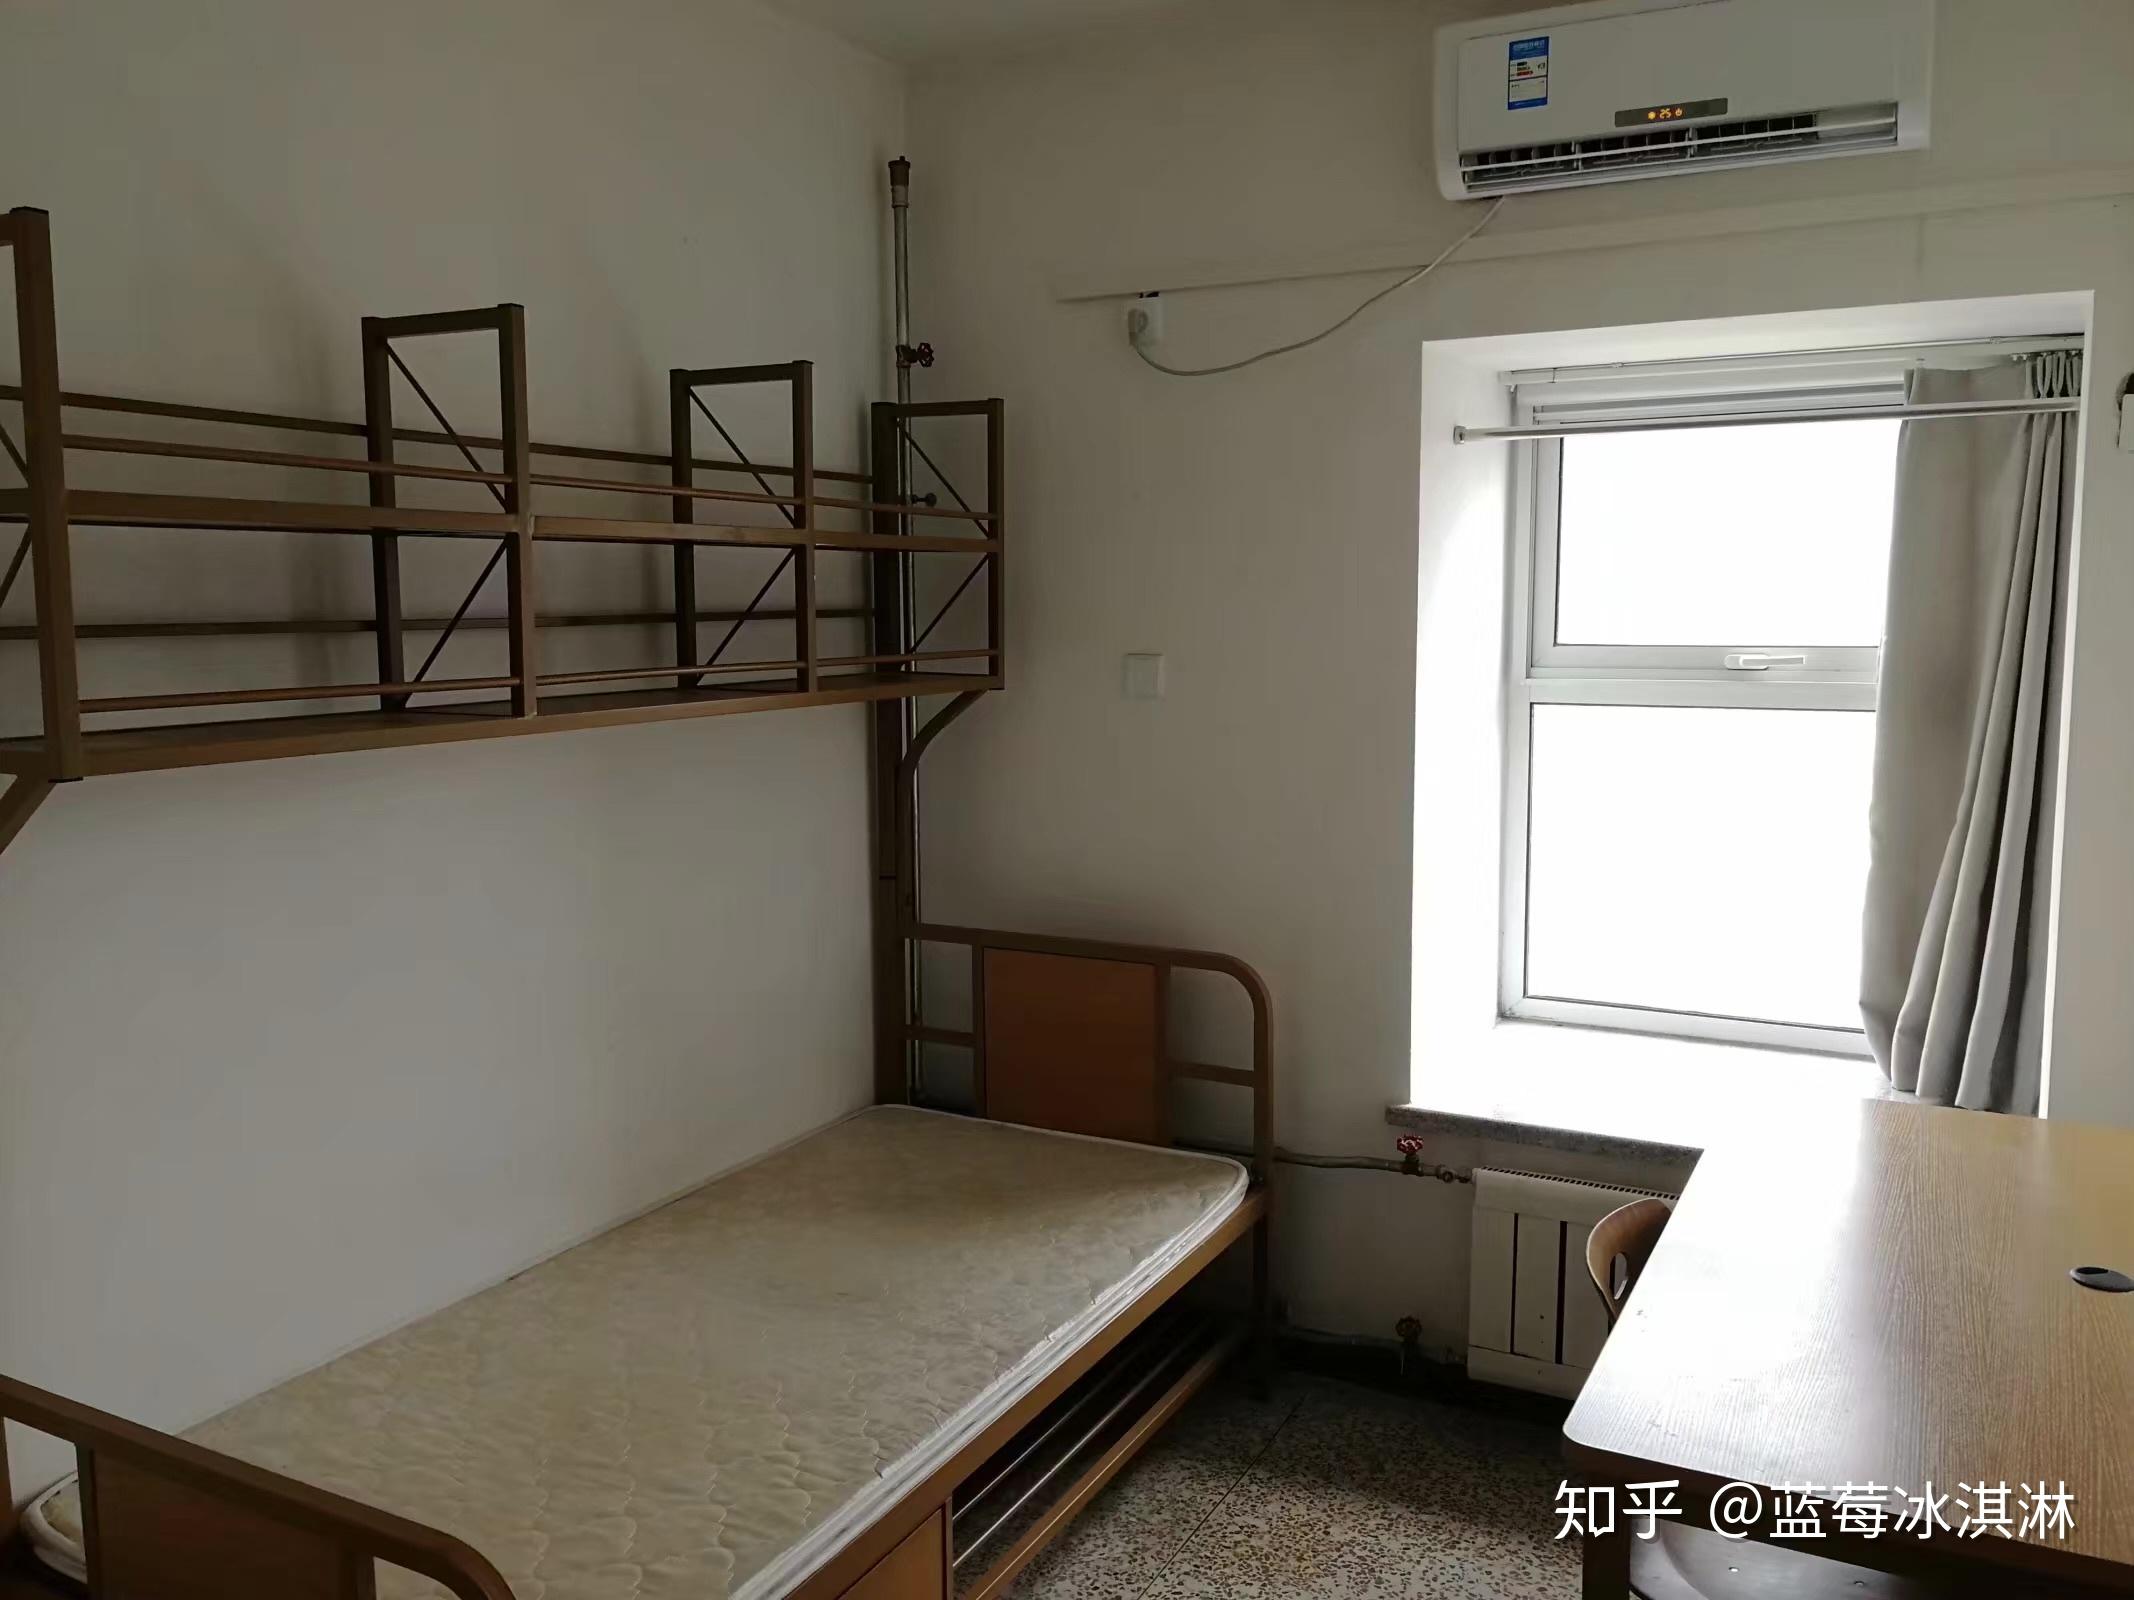 中国科学院大学宿舍怎么样 住宿条件好不好_高三网